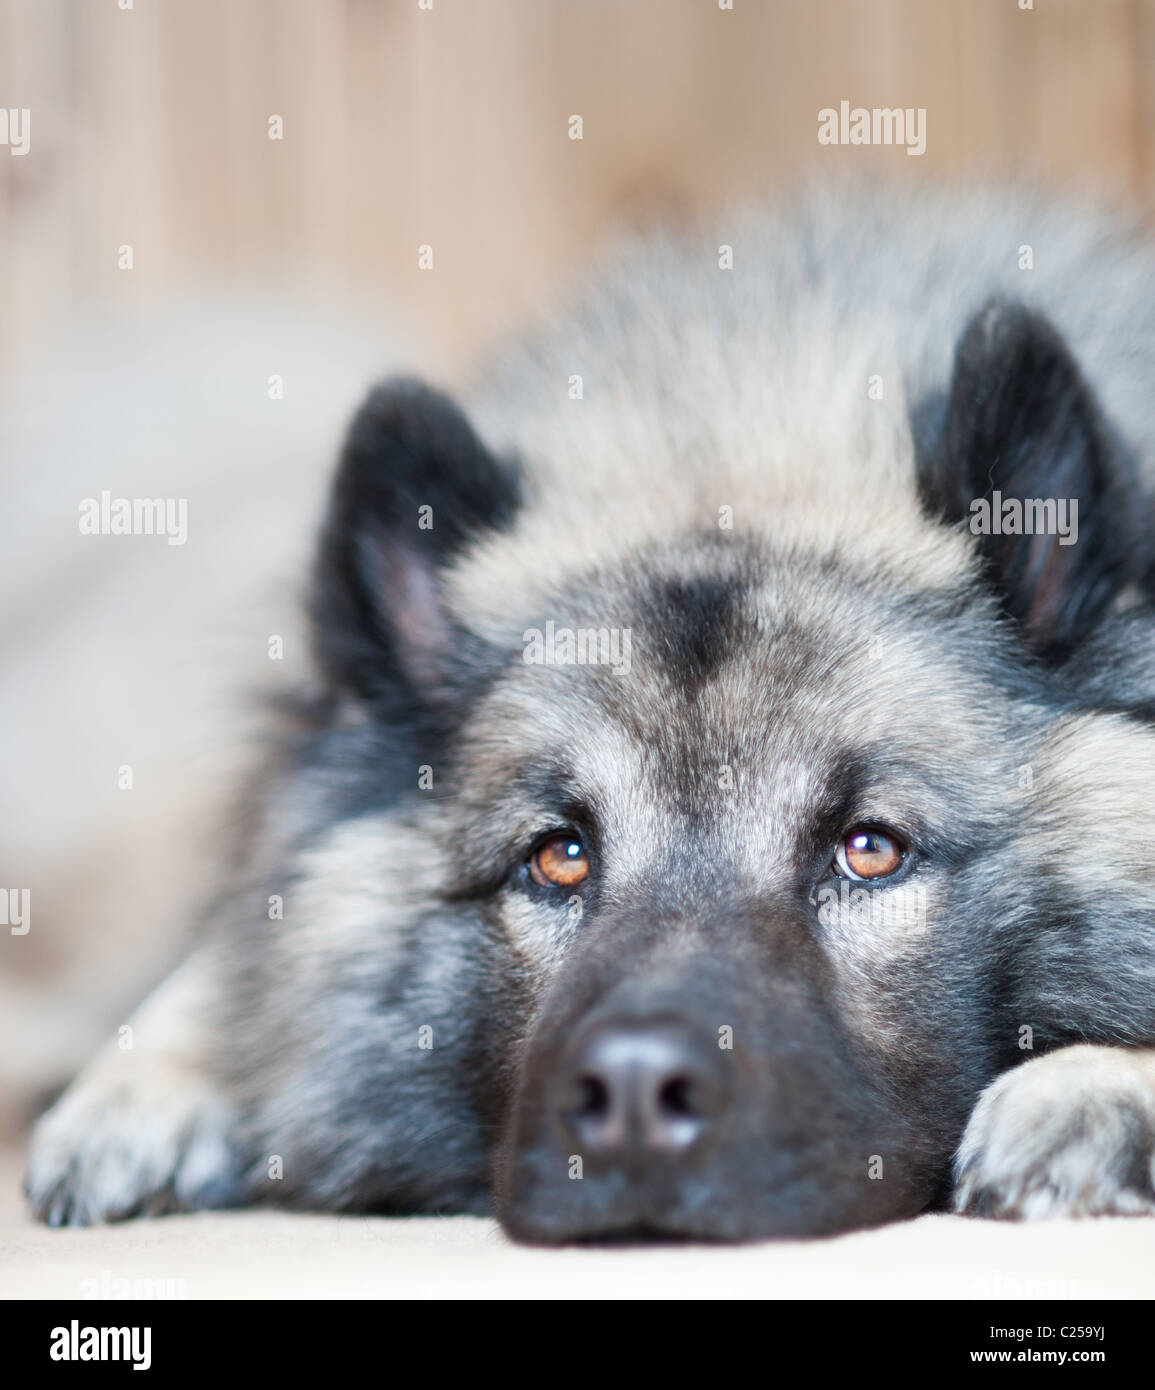 Un lupo come cane Eurasier giace sul pavimento cercando la distanza Foto Stock